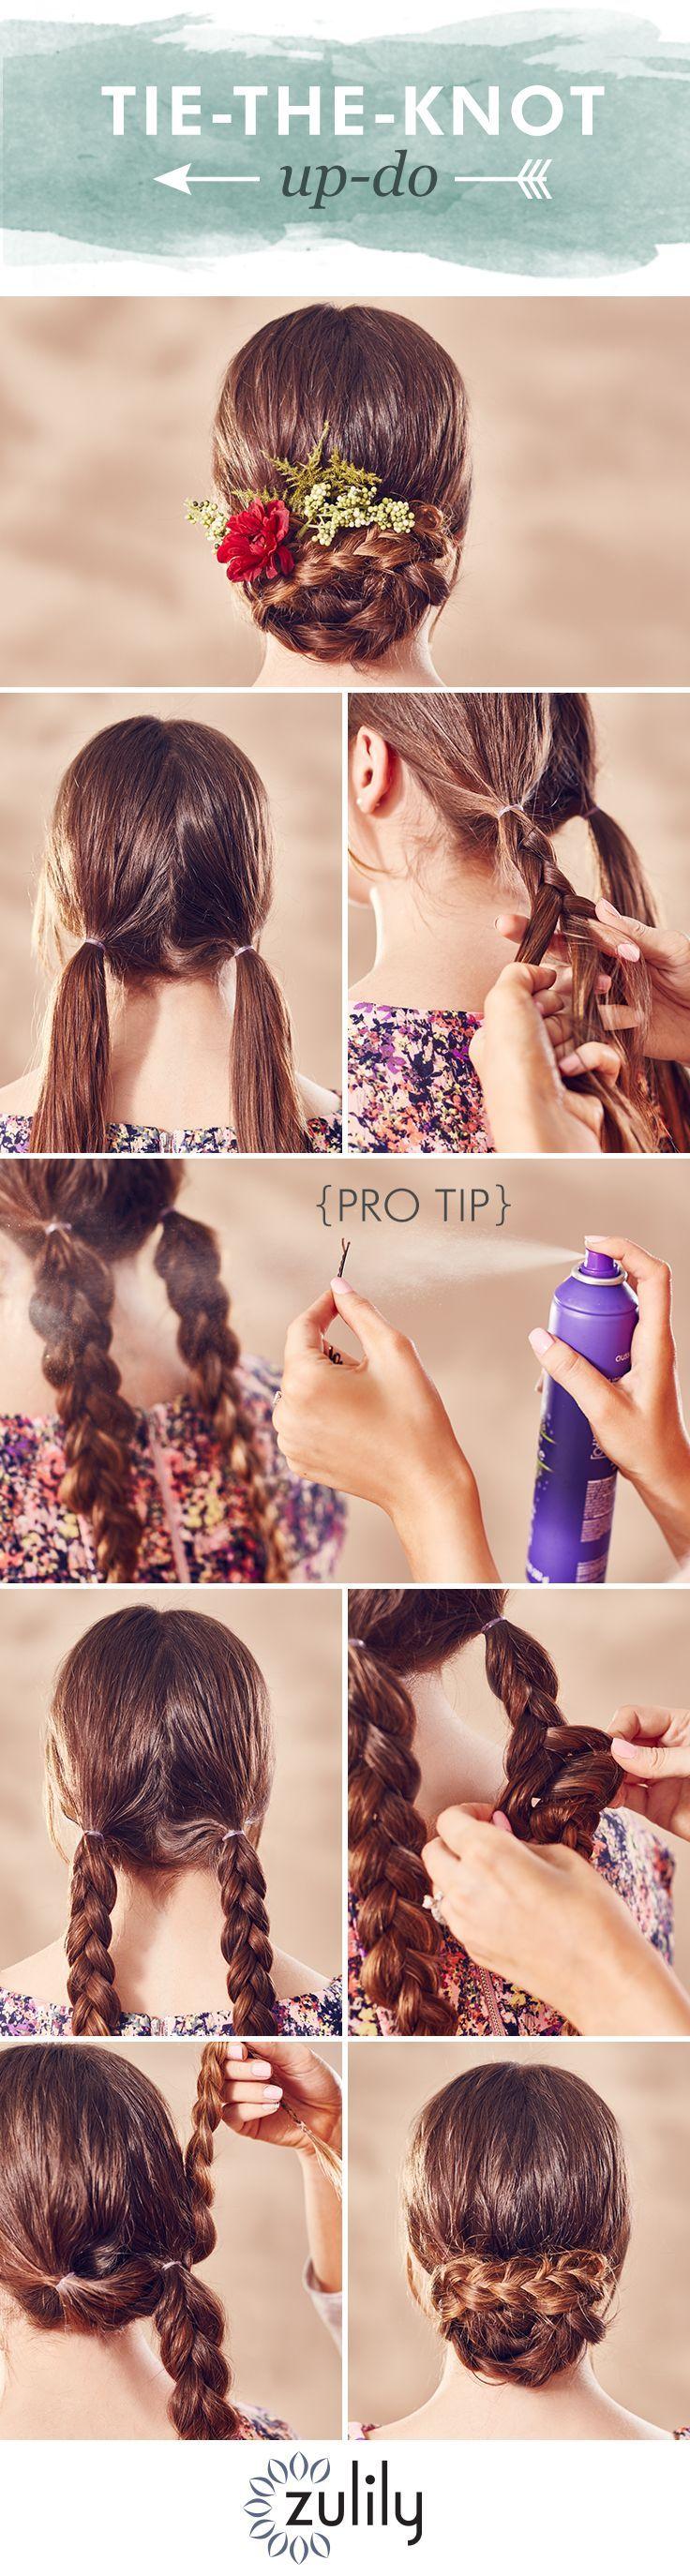 زفاف - Hair How-To: Tie The Knot With This Beautiful Braided Style